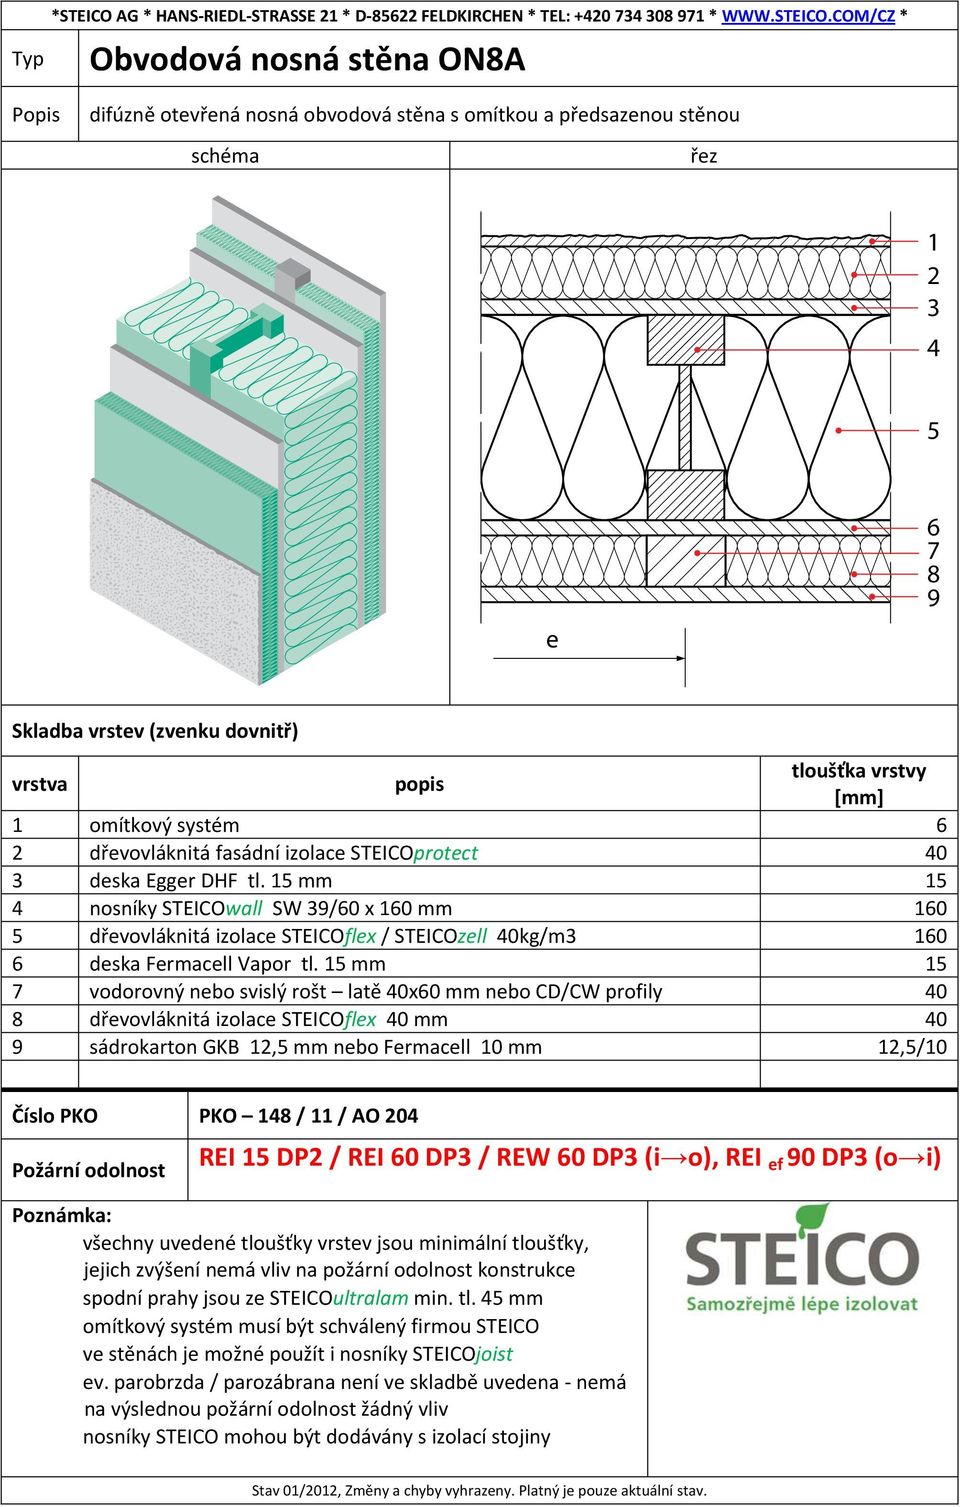 mm vodorovný nebo svislý rošt latě 0x0 mm nebo CD/CW profily 0 8 dřevovláknitá izolace STEICOflex 0 mm 0 9 sádrokarton GKB, mm nebo Fermacell 0 mm,/0 Číslo PKO